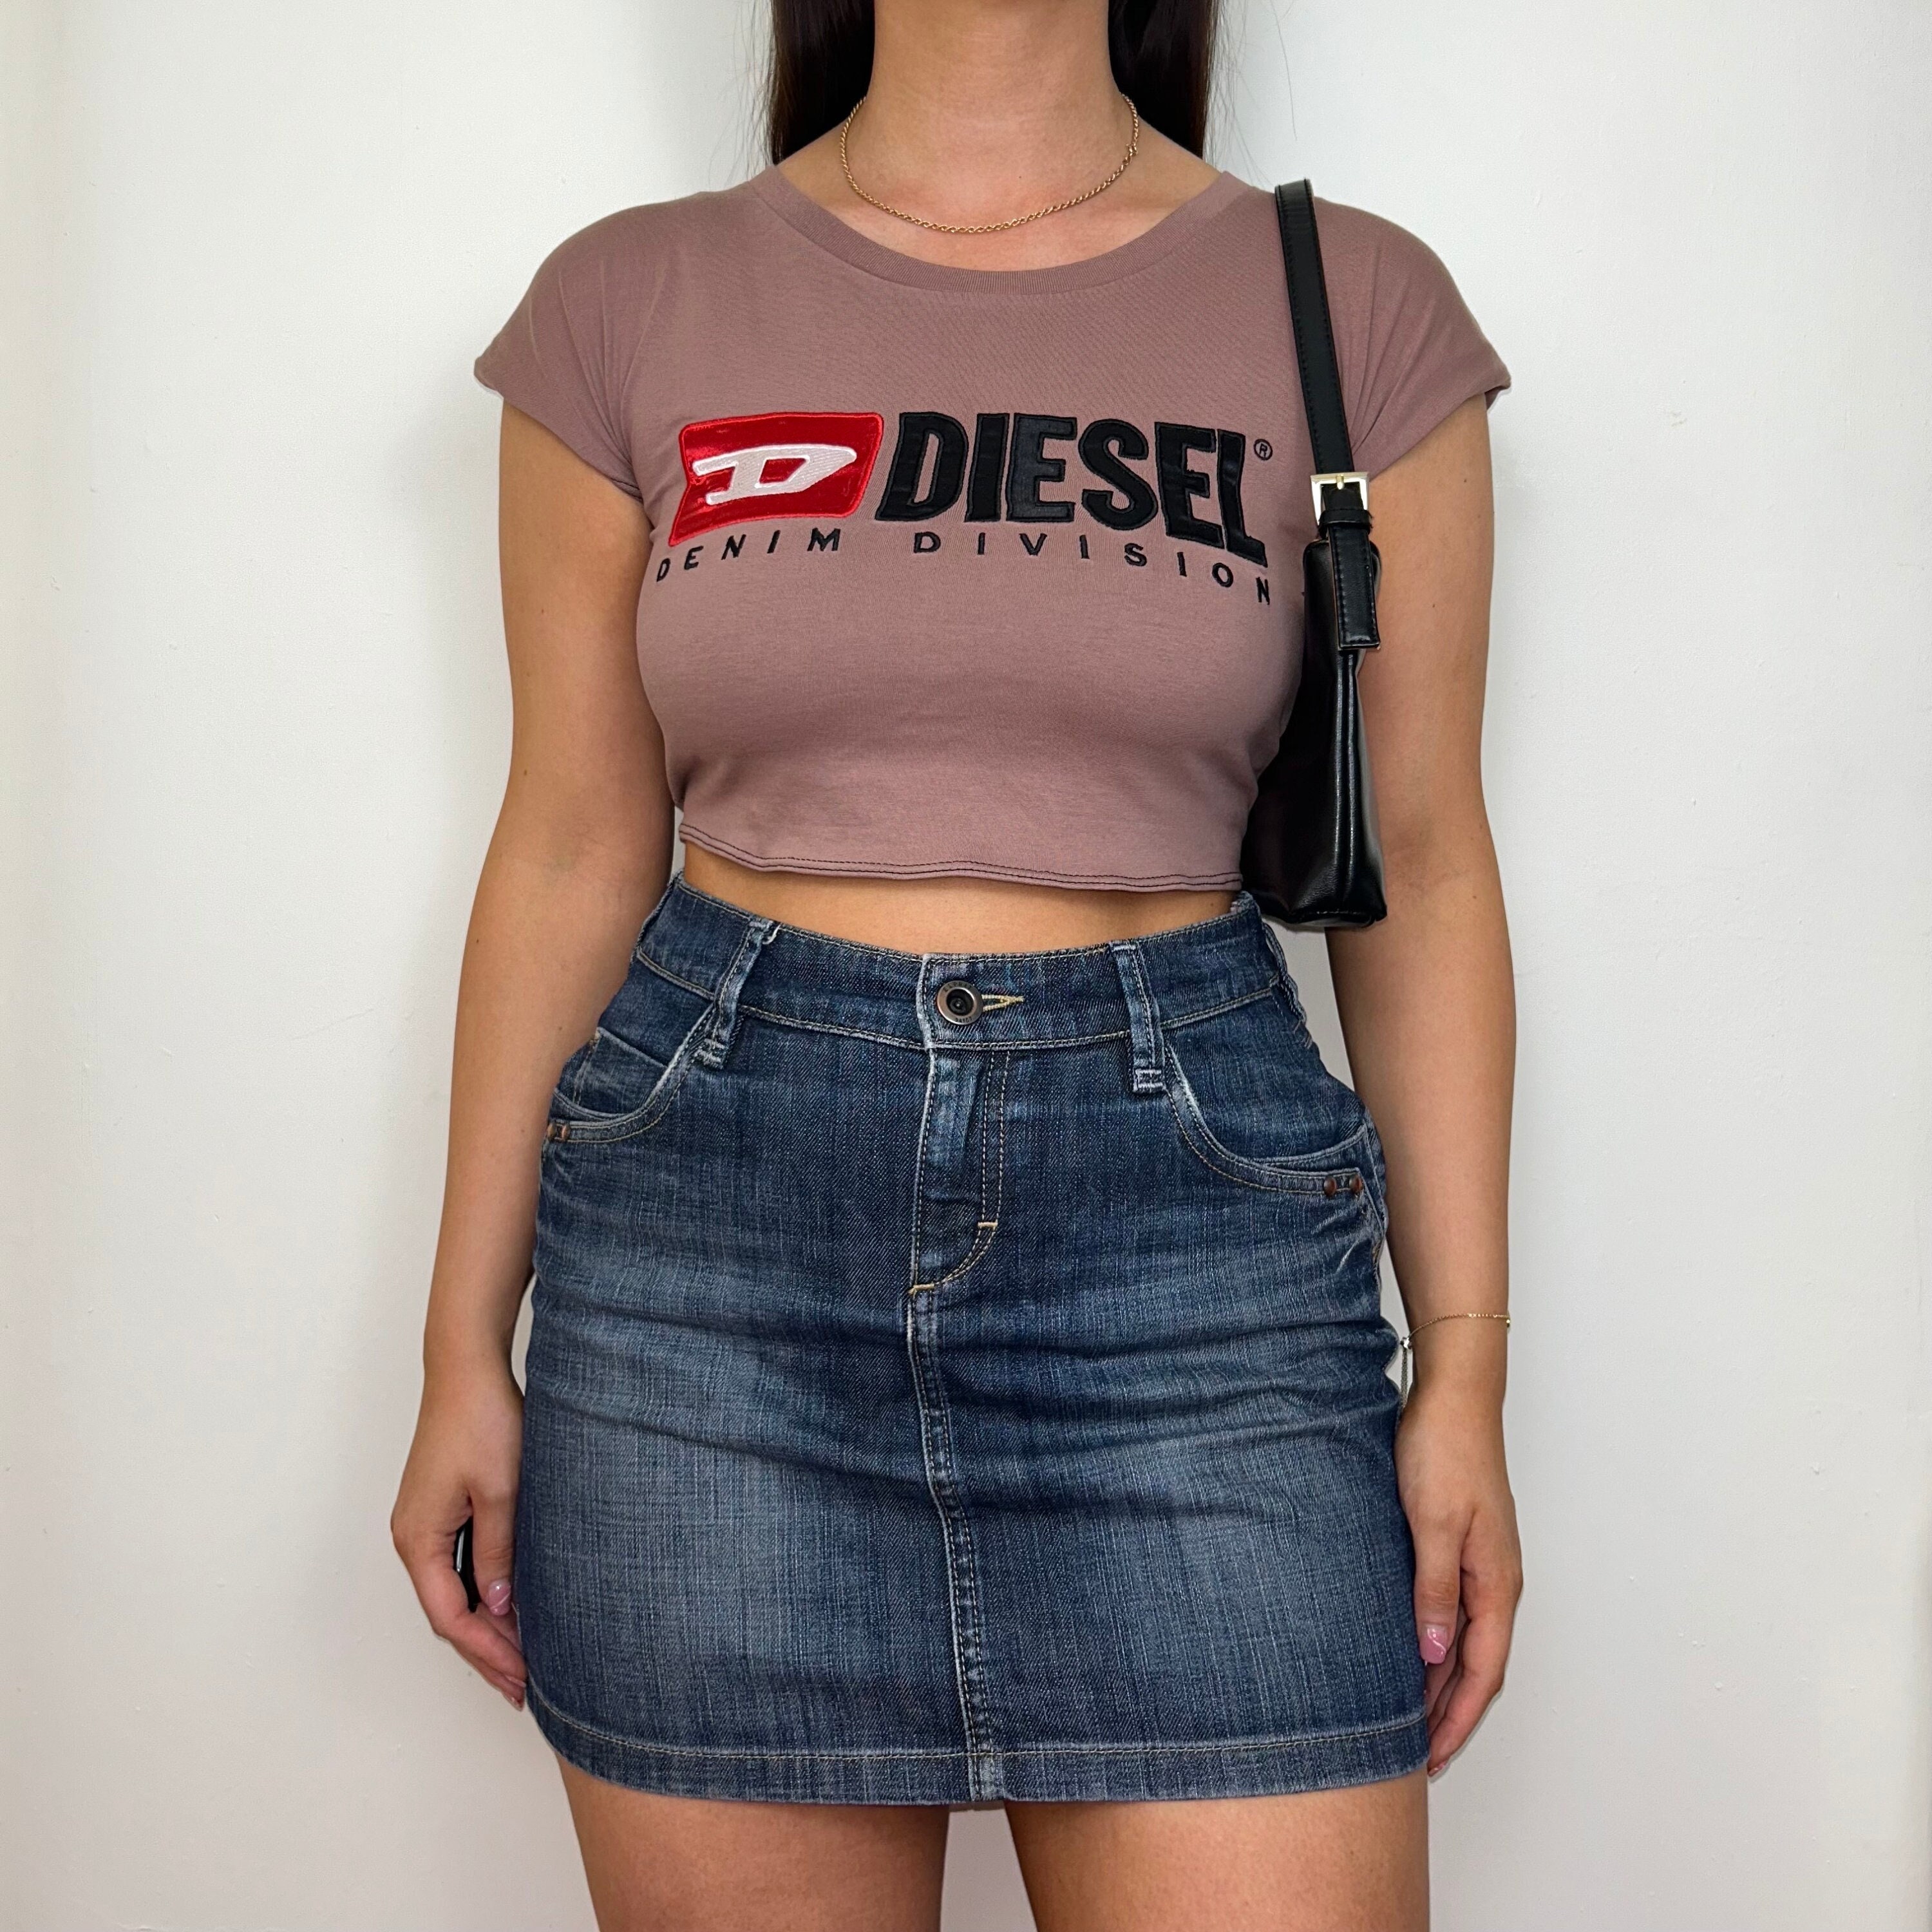 Women's Diesel Crop Tops, New & Used